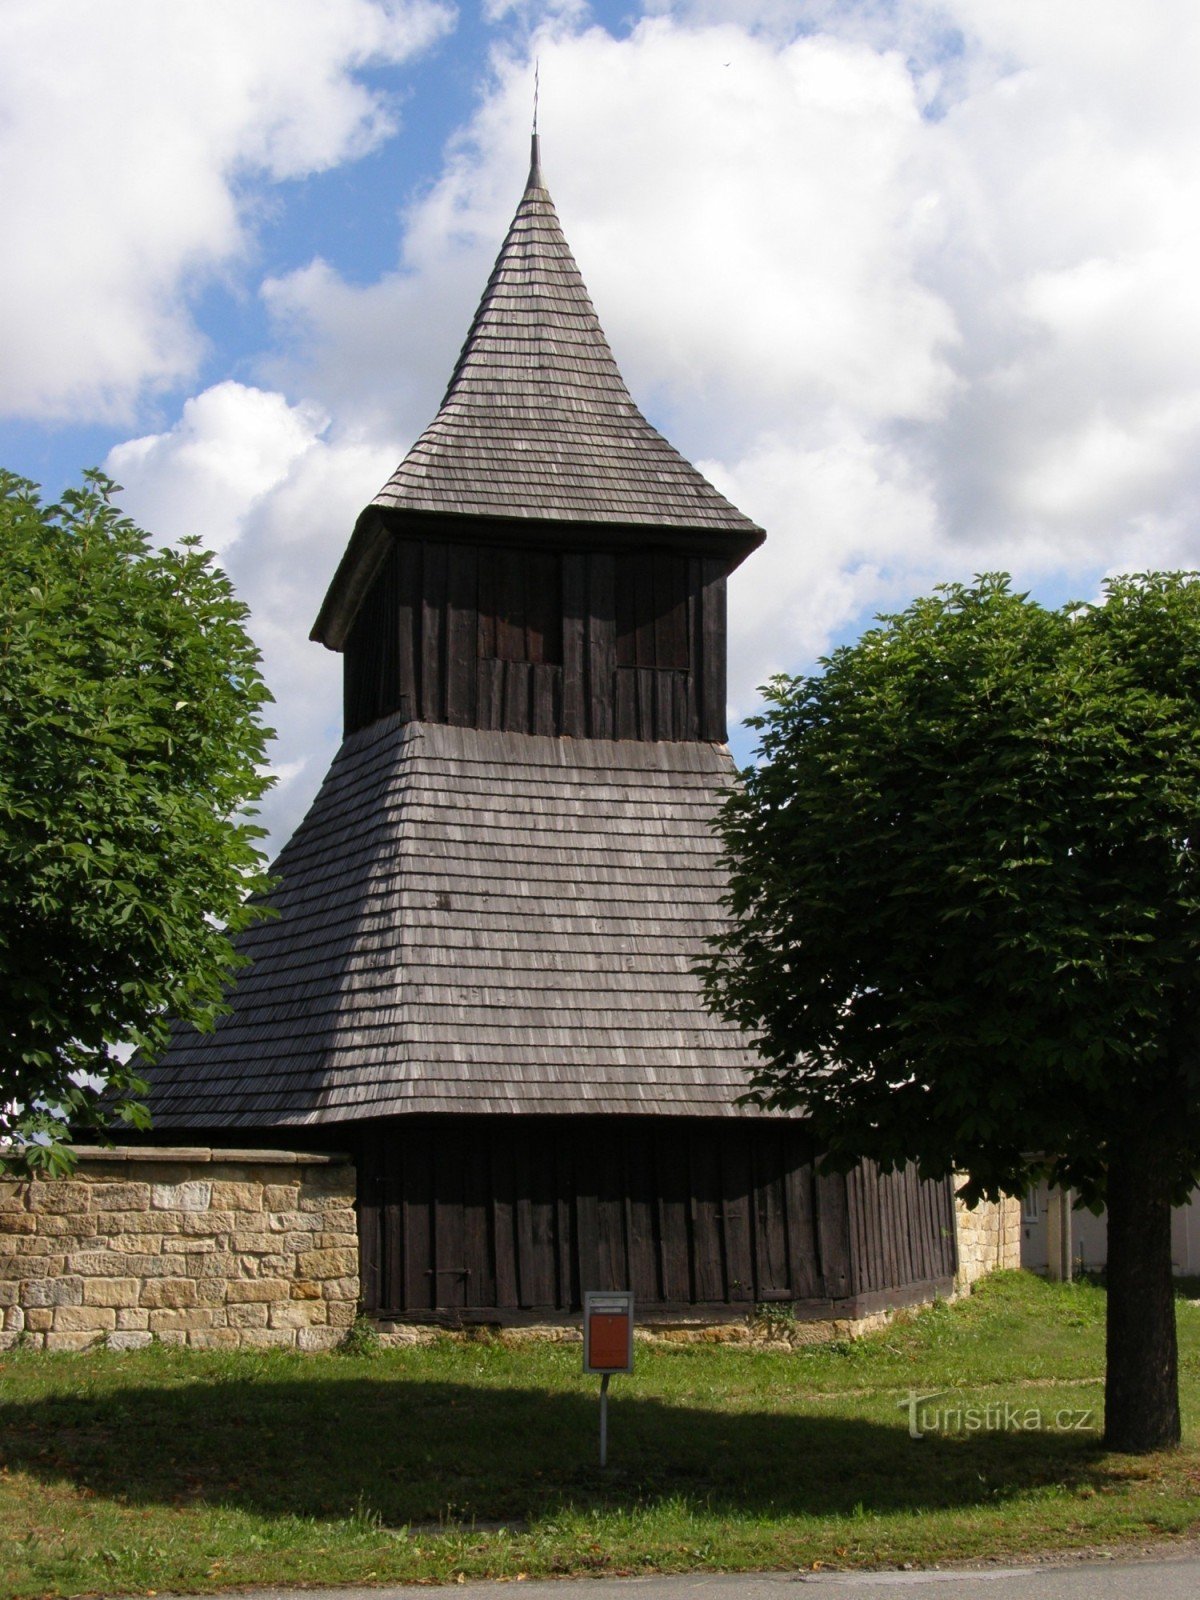 Vysočany - trækirken St. Markeder med et klokketårn af træ